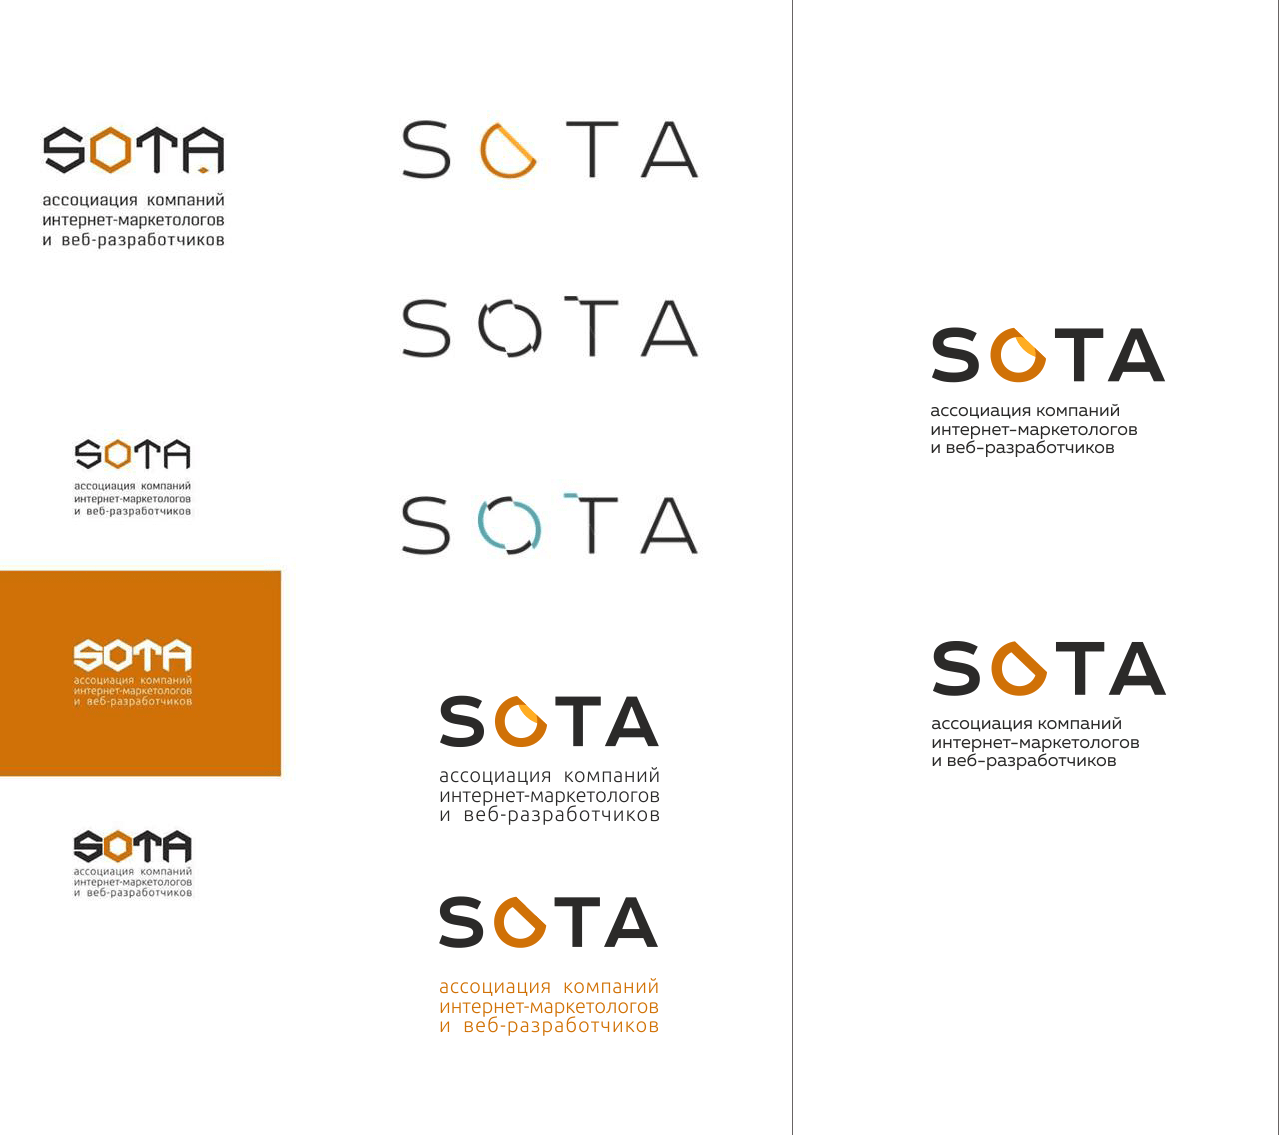 Разработка дизайна SOTA